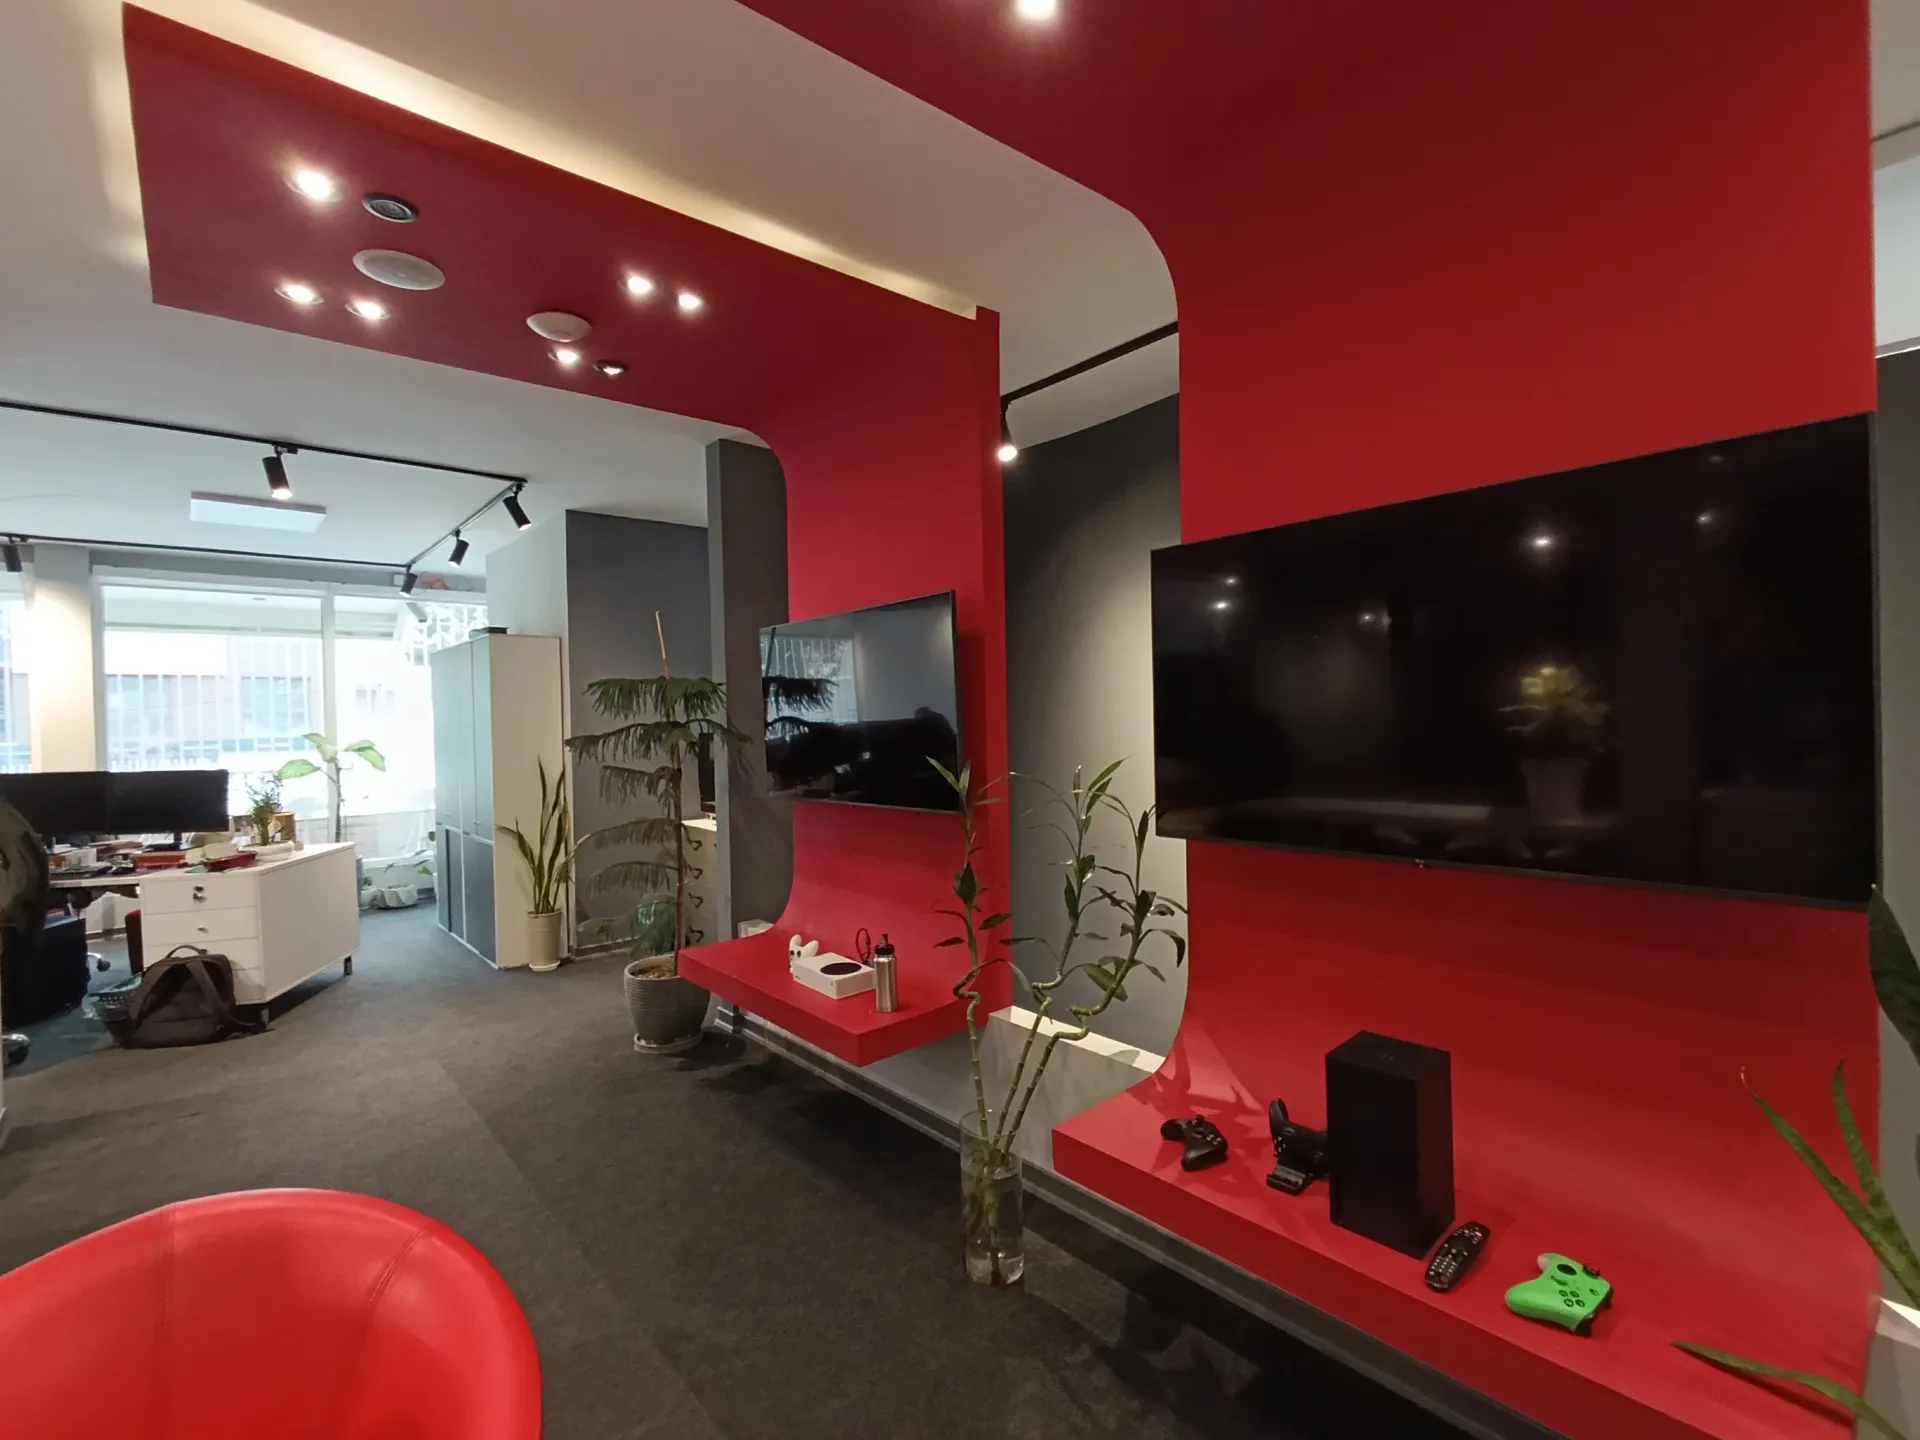 نمونه عکس ردمی نوت ۱۳ پرو 4G با دوربین اولتراواید از یک دفتر کار با دیوارهای قرمز